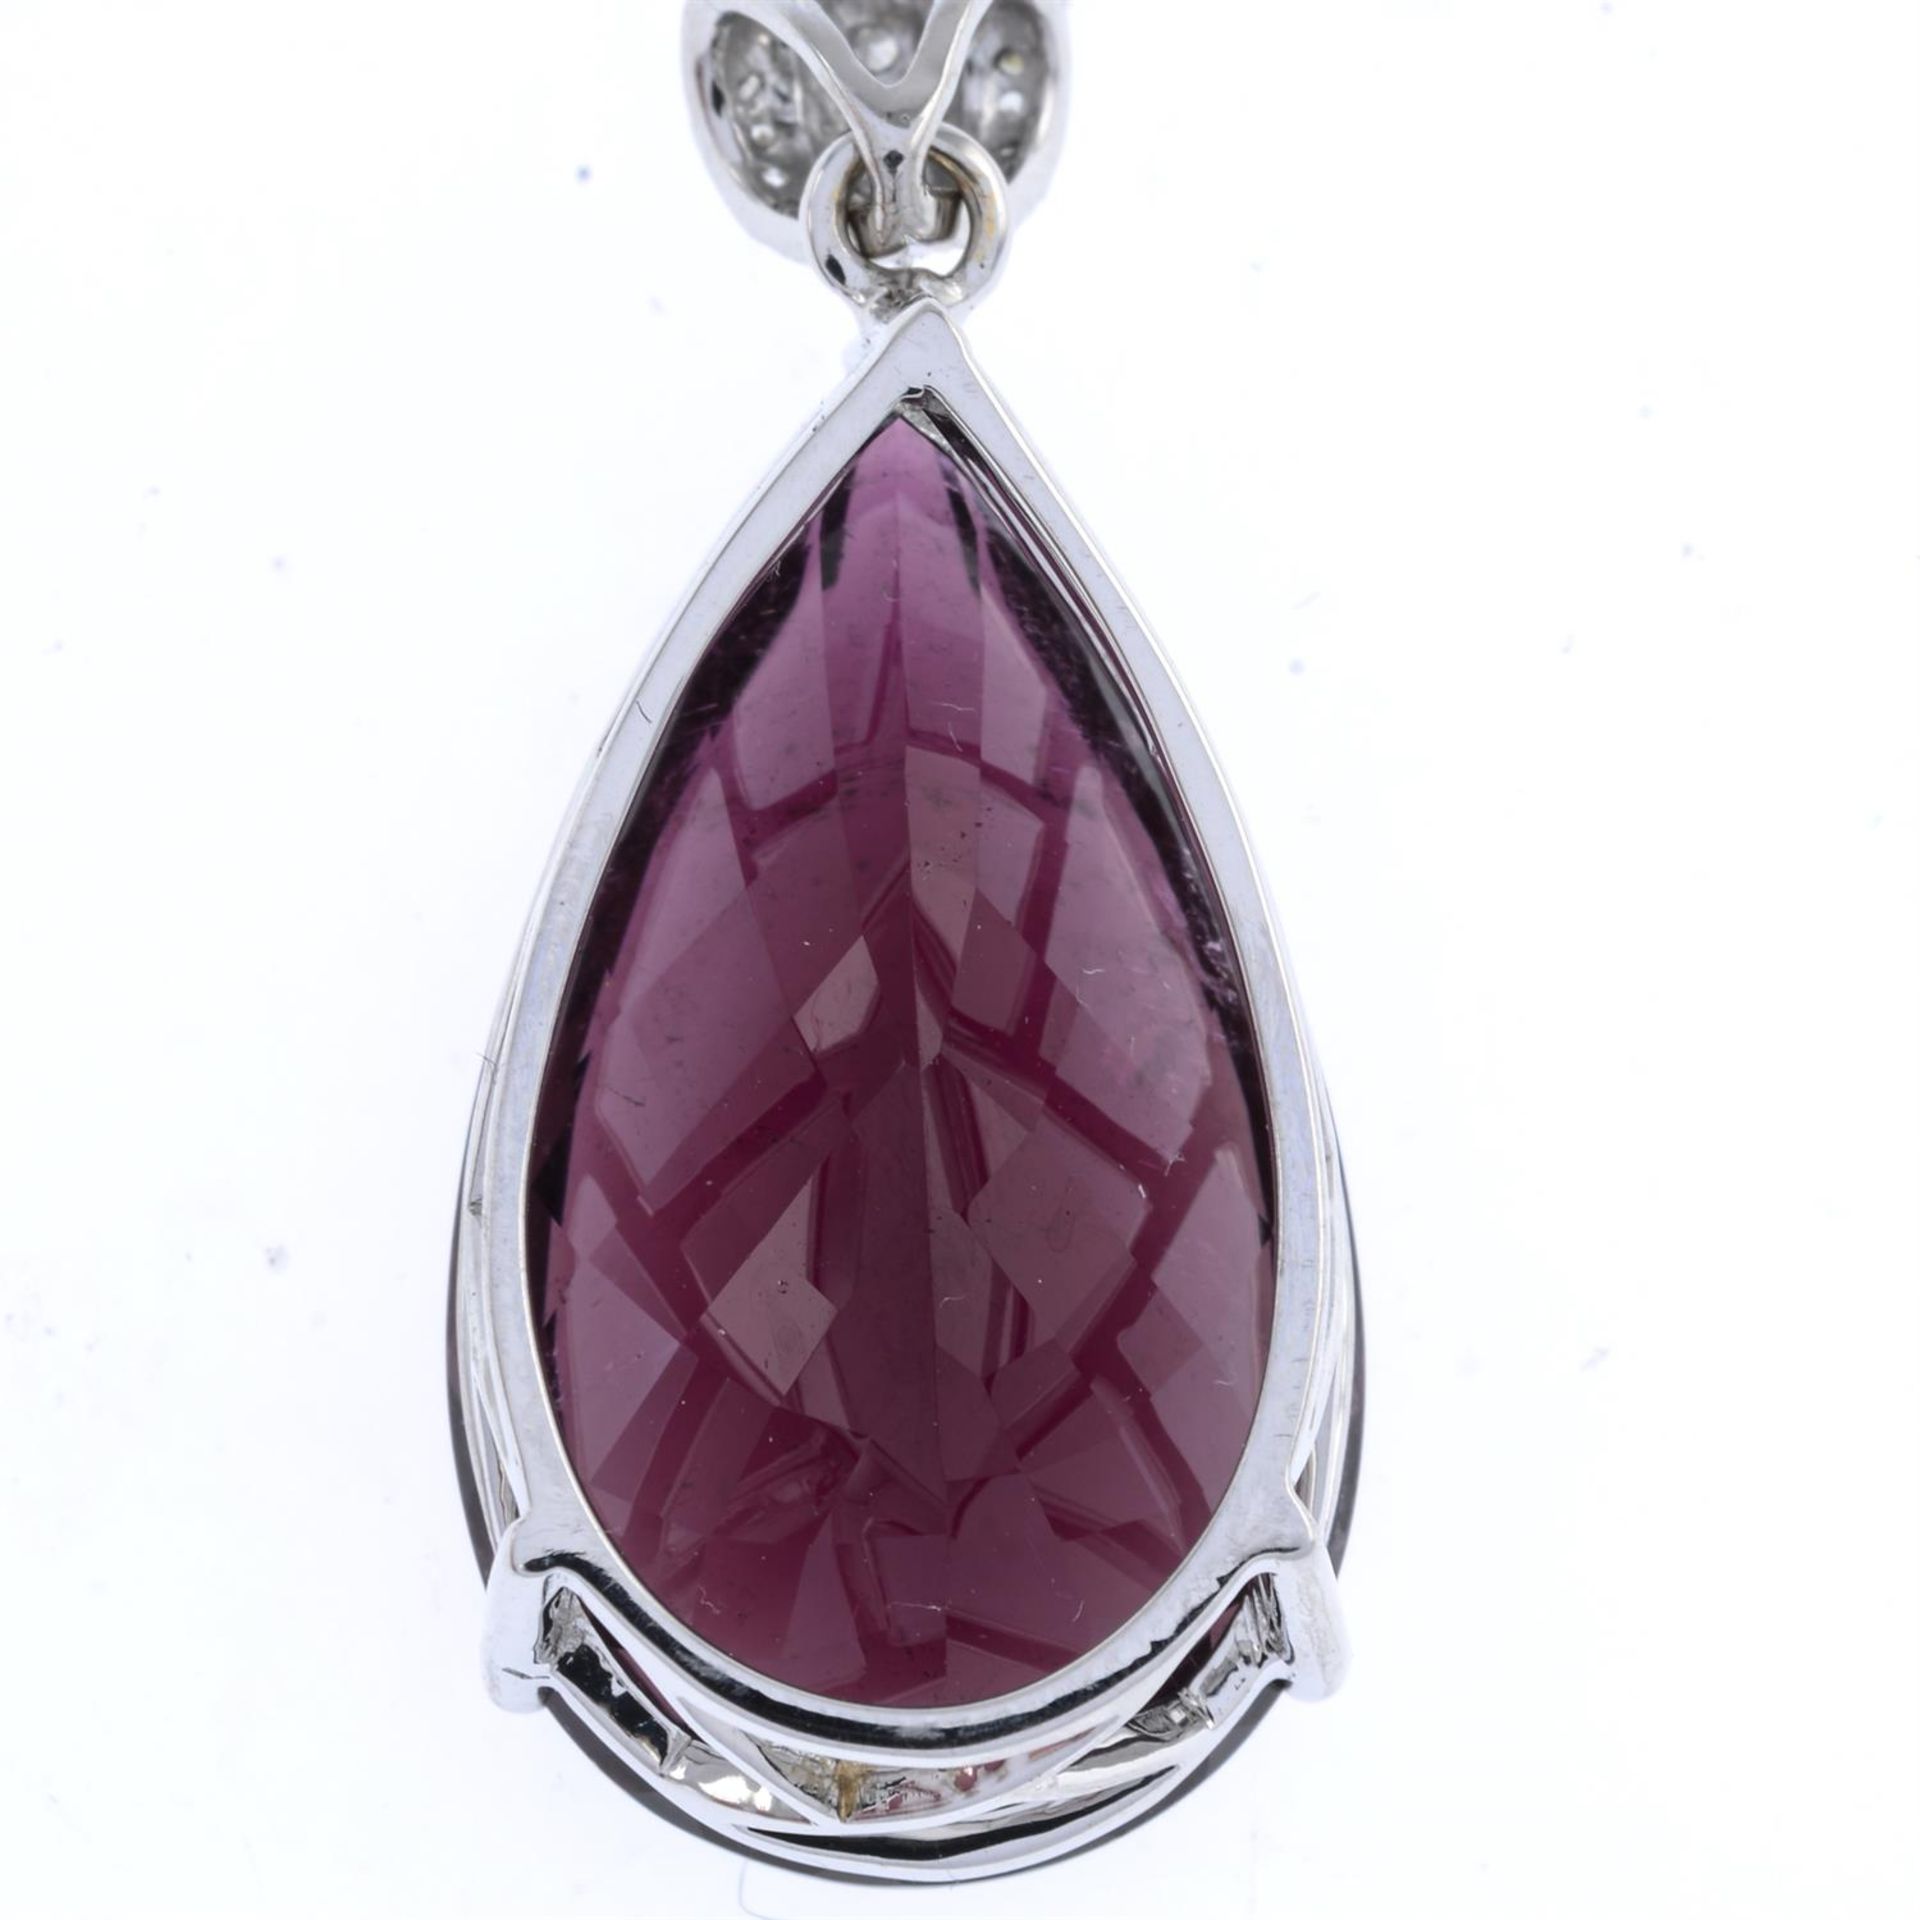 Tourmaline & diamond pendant - Image 2 of 2